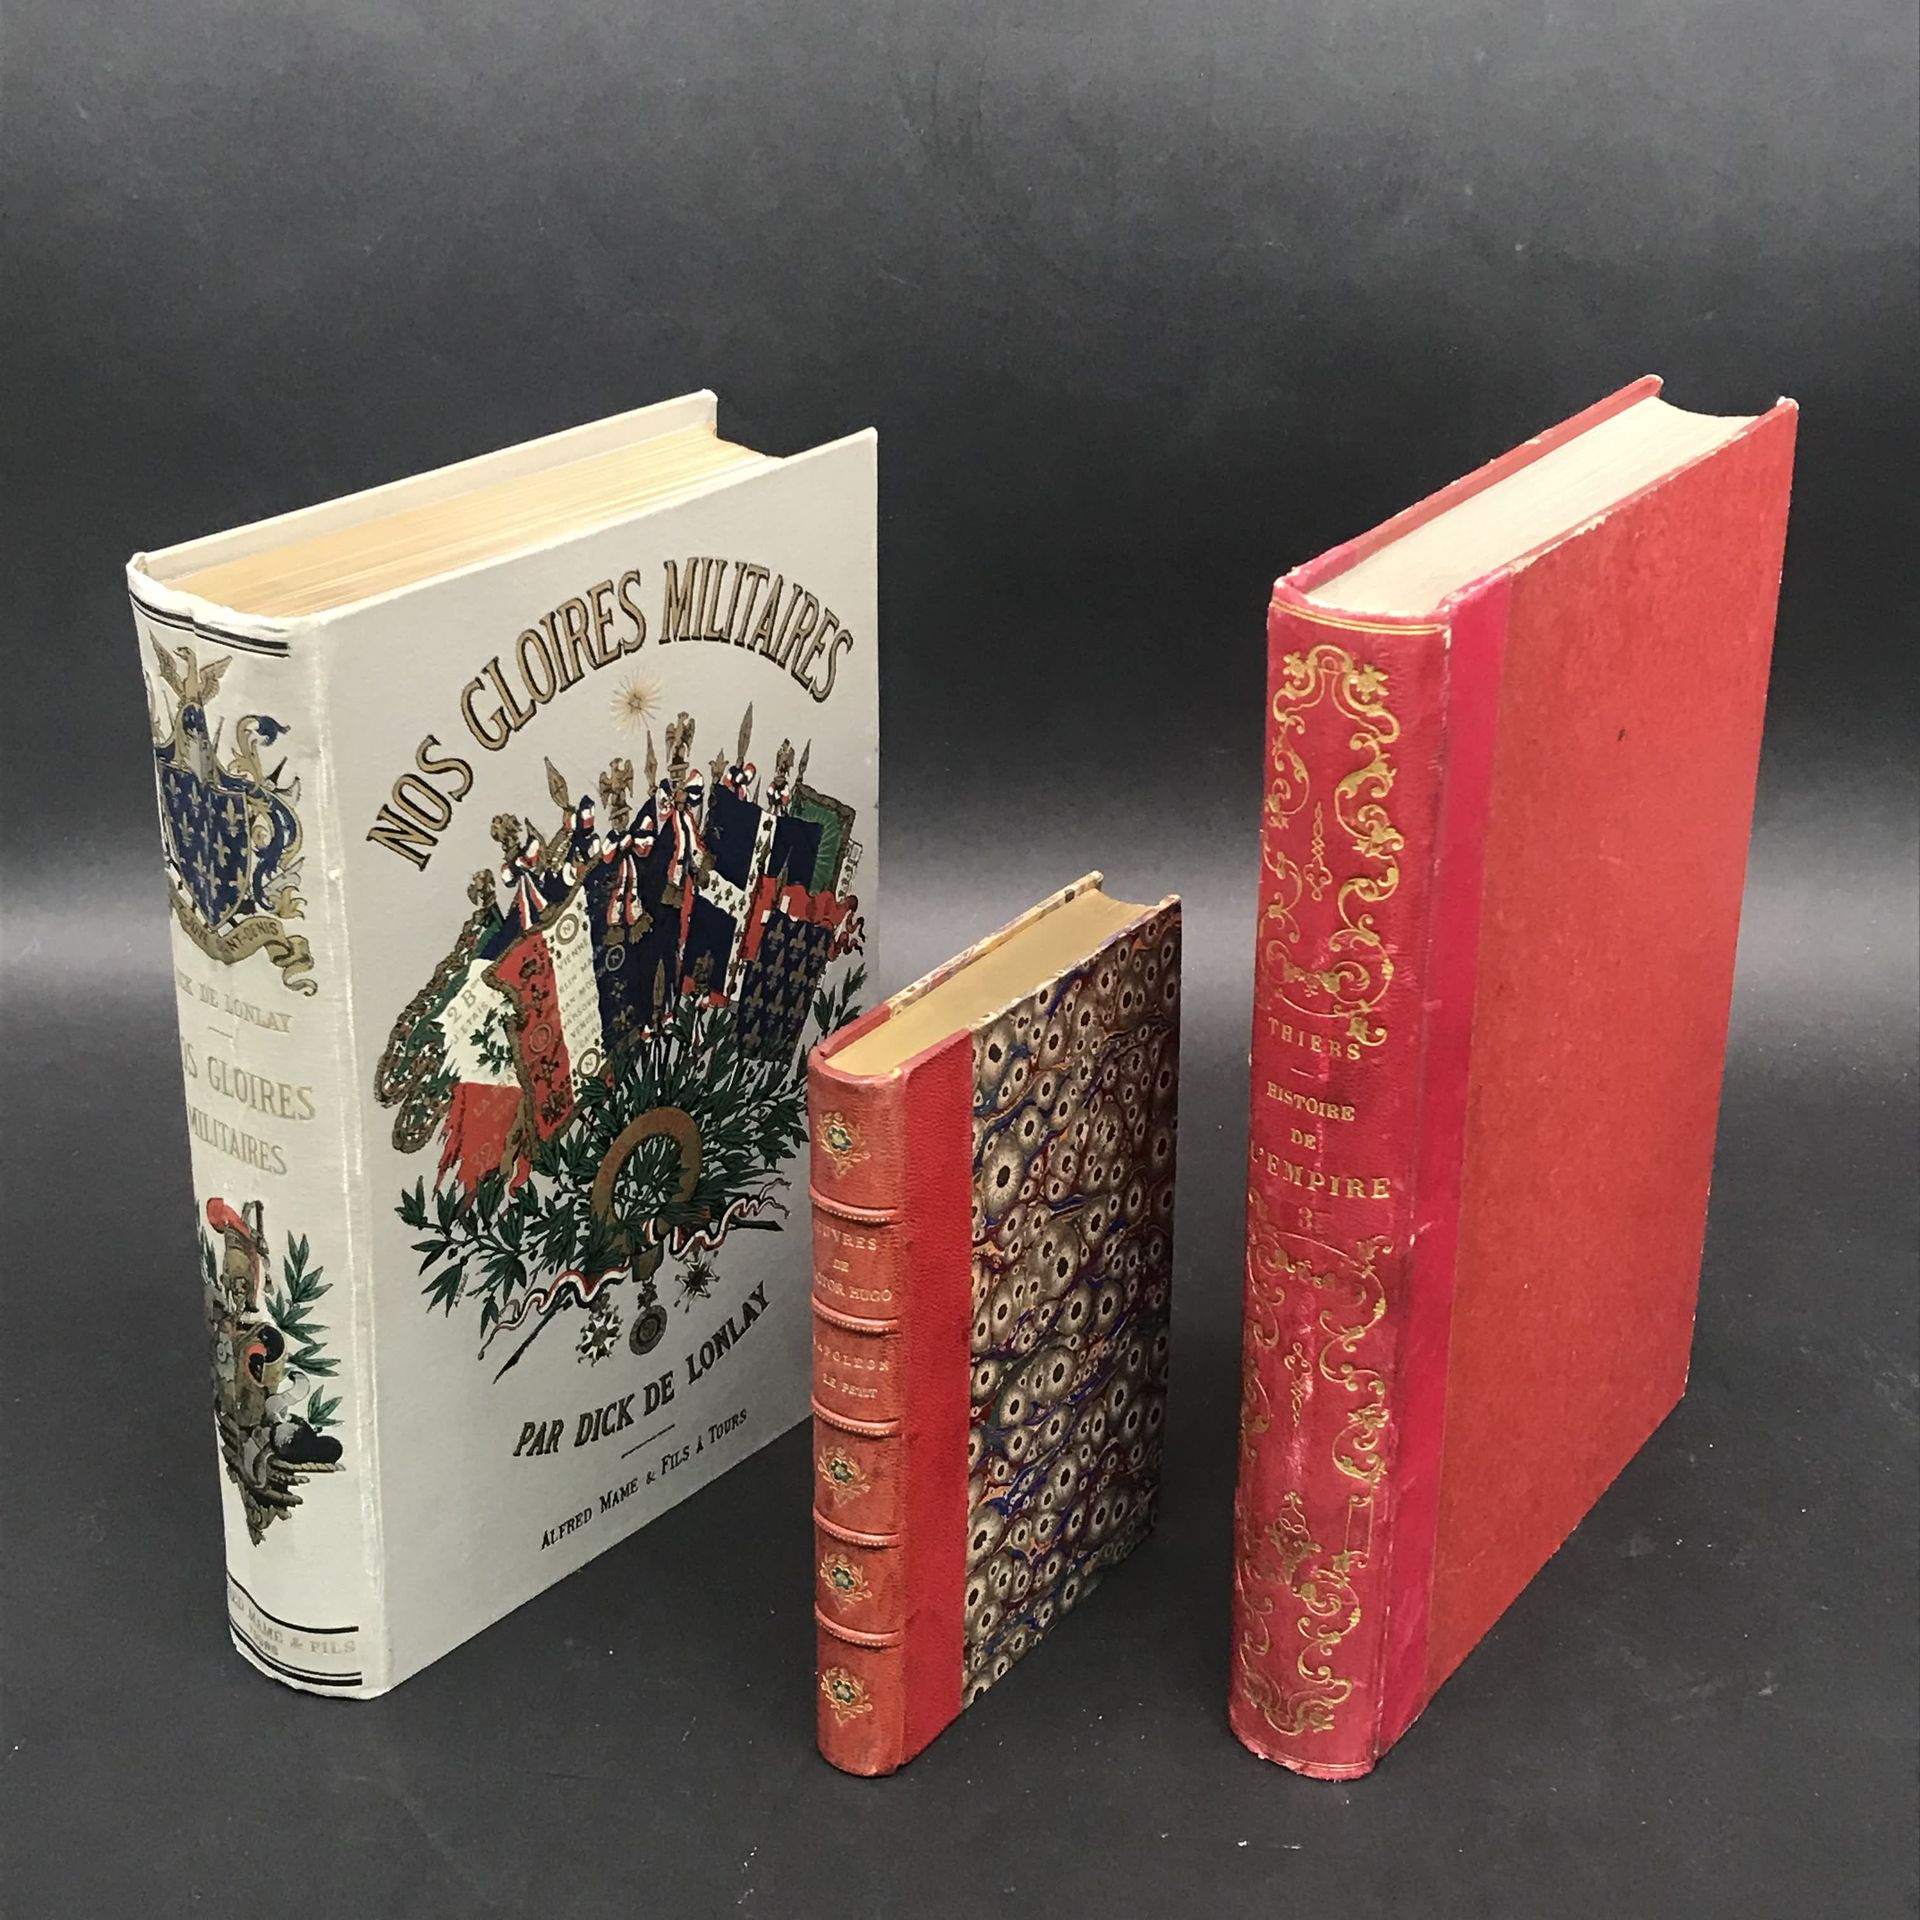 Null 一箱关于拿破仑主题的书籍

梯也尔的《帝国史》四卷本，维克多-雨果的《小拿破仑》，赫策尔版，阿尔弗雷德-马姆的《我们的军功》，以及各种。